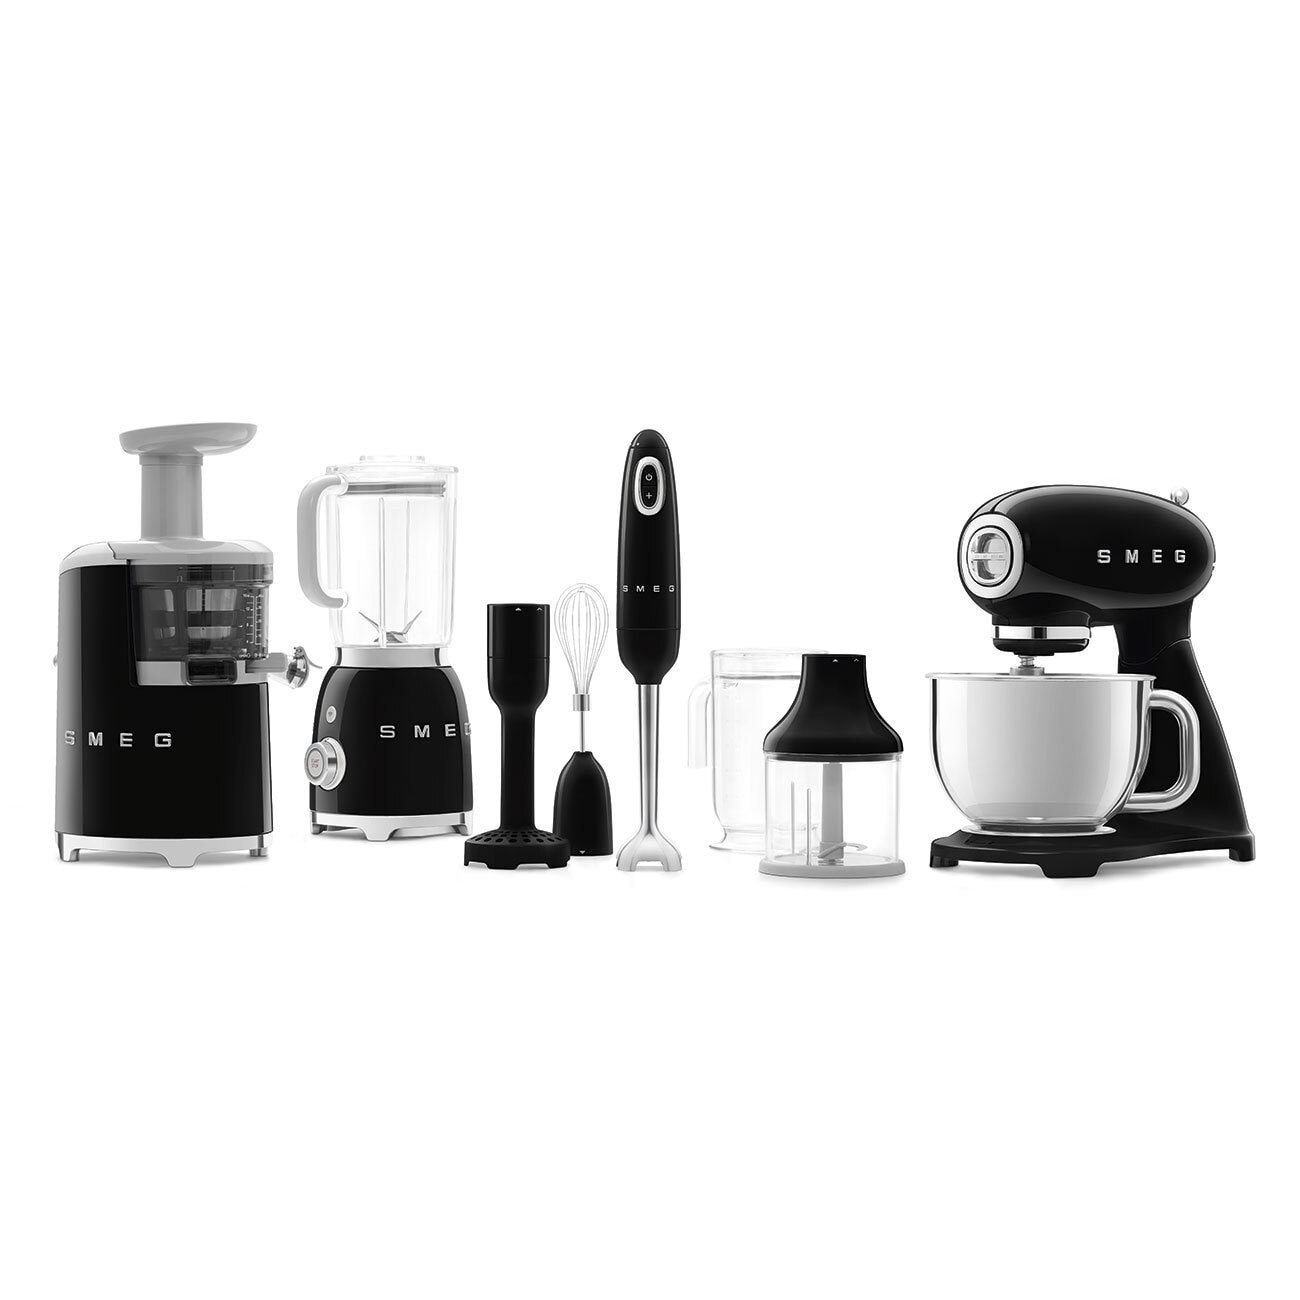 SMEG Küchenmaschine Full-Color schwarz/ silberfarbig